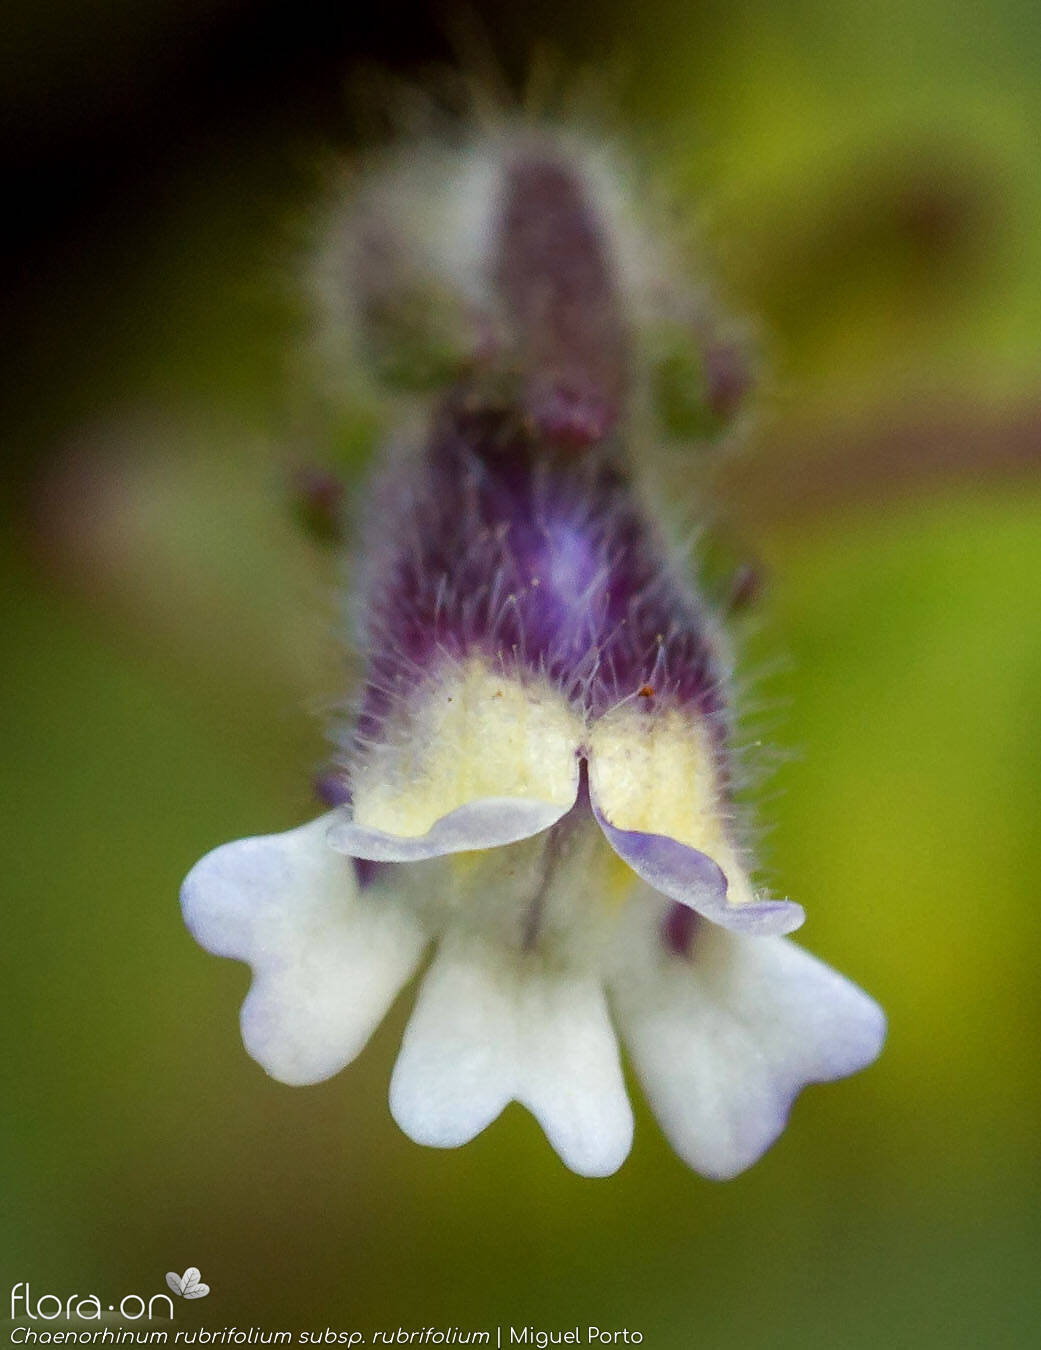 Chaenorhinum rubrifolium rubrifolium - Flor (close-up) | Miguel Porto; CC BY-NC 4.0